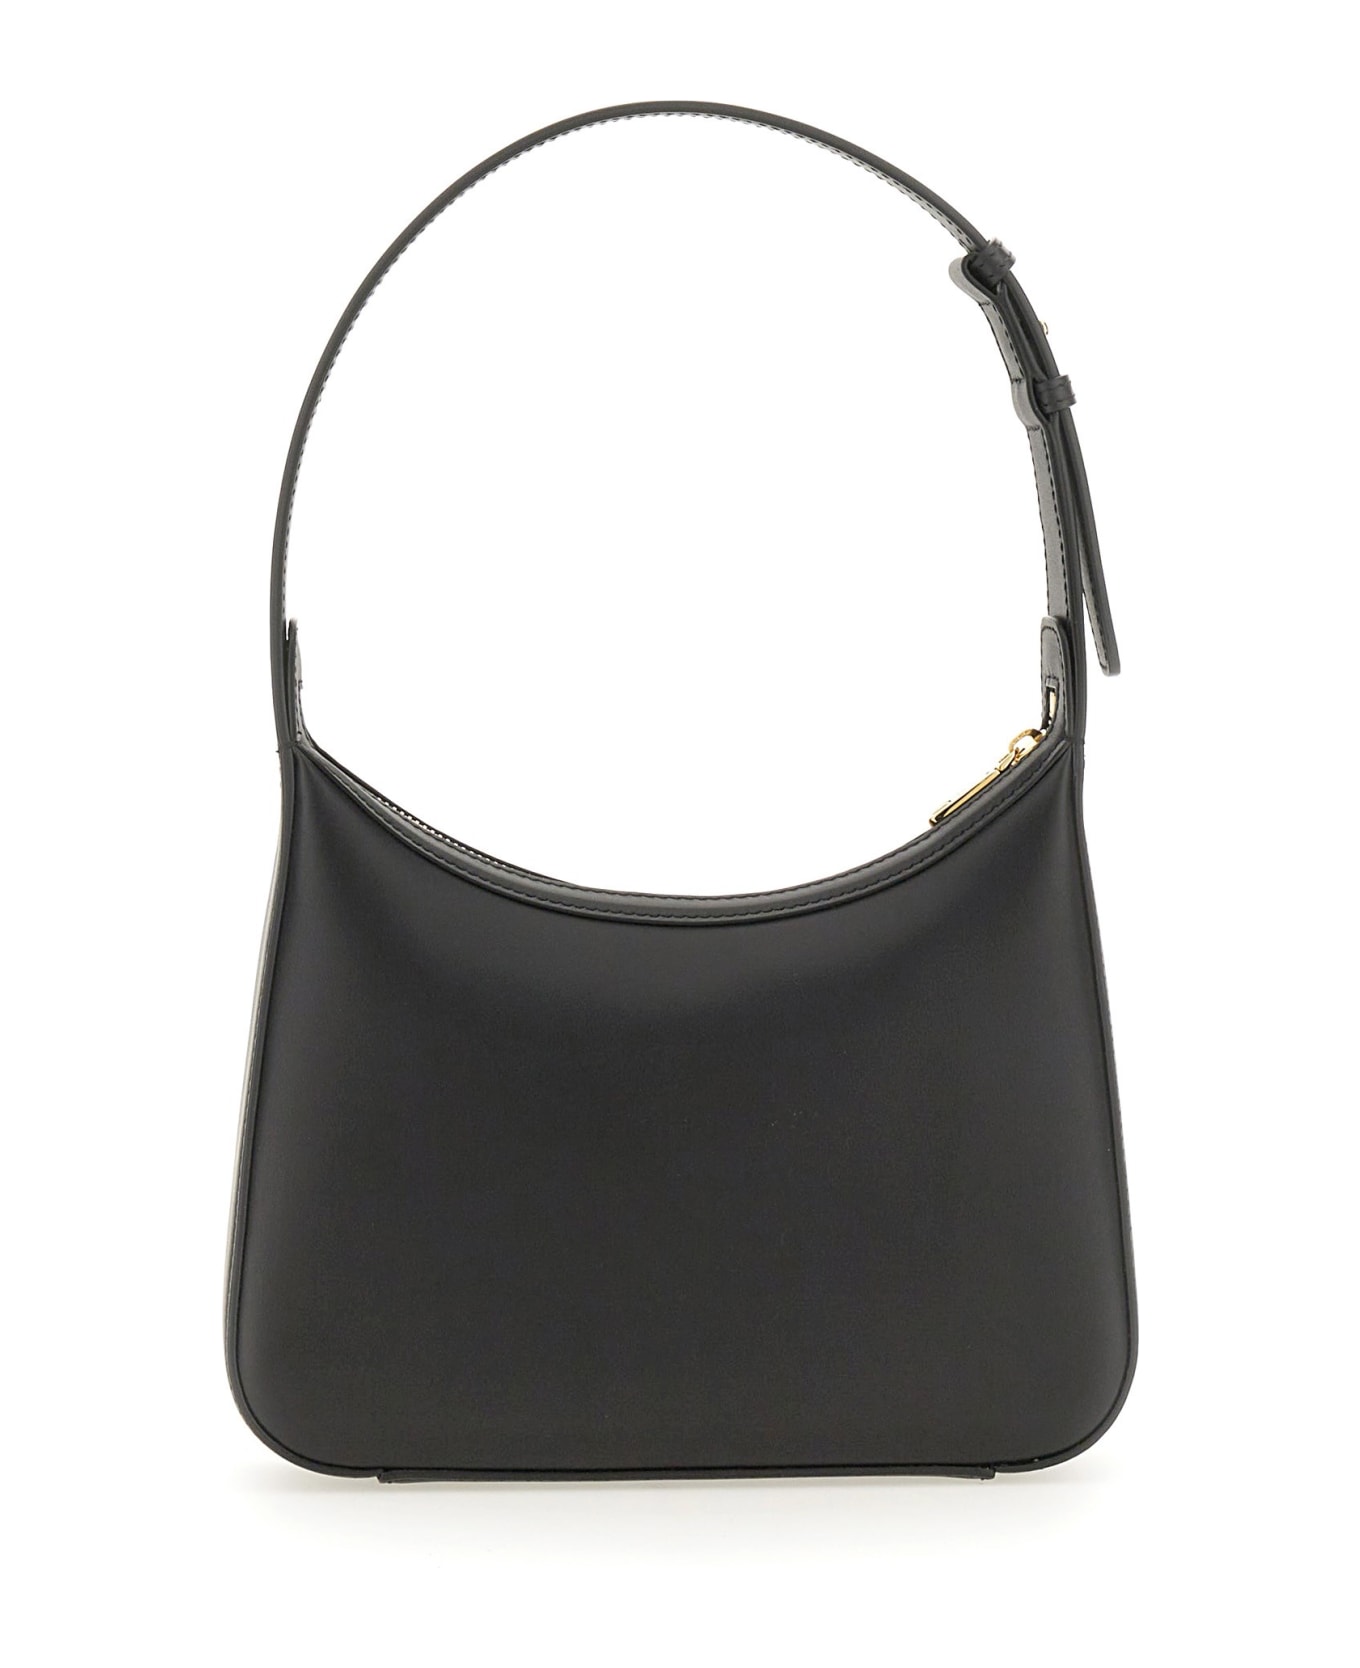 Dolce & Gabbana Shoulder Bag - Black トートバッグ